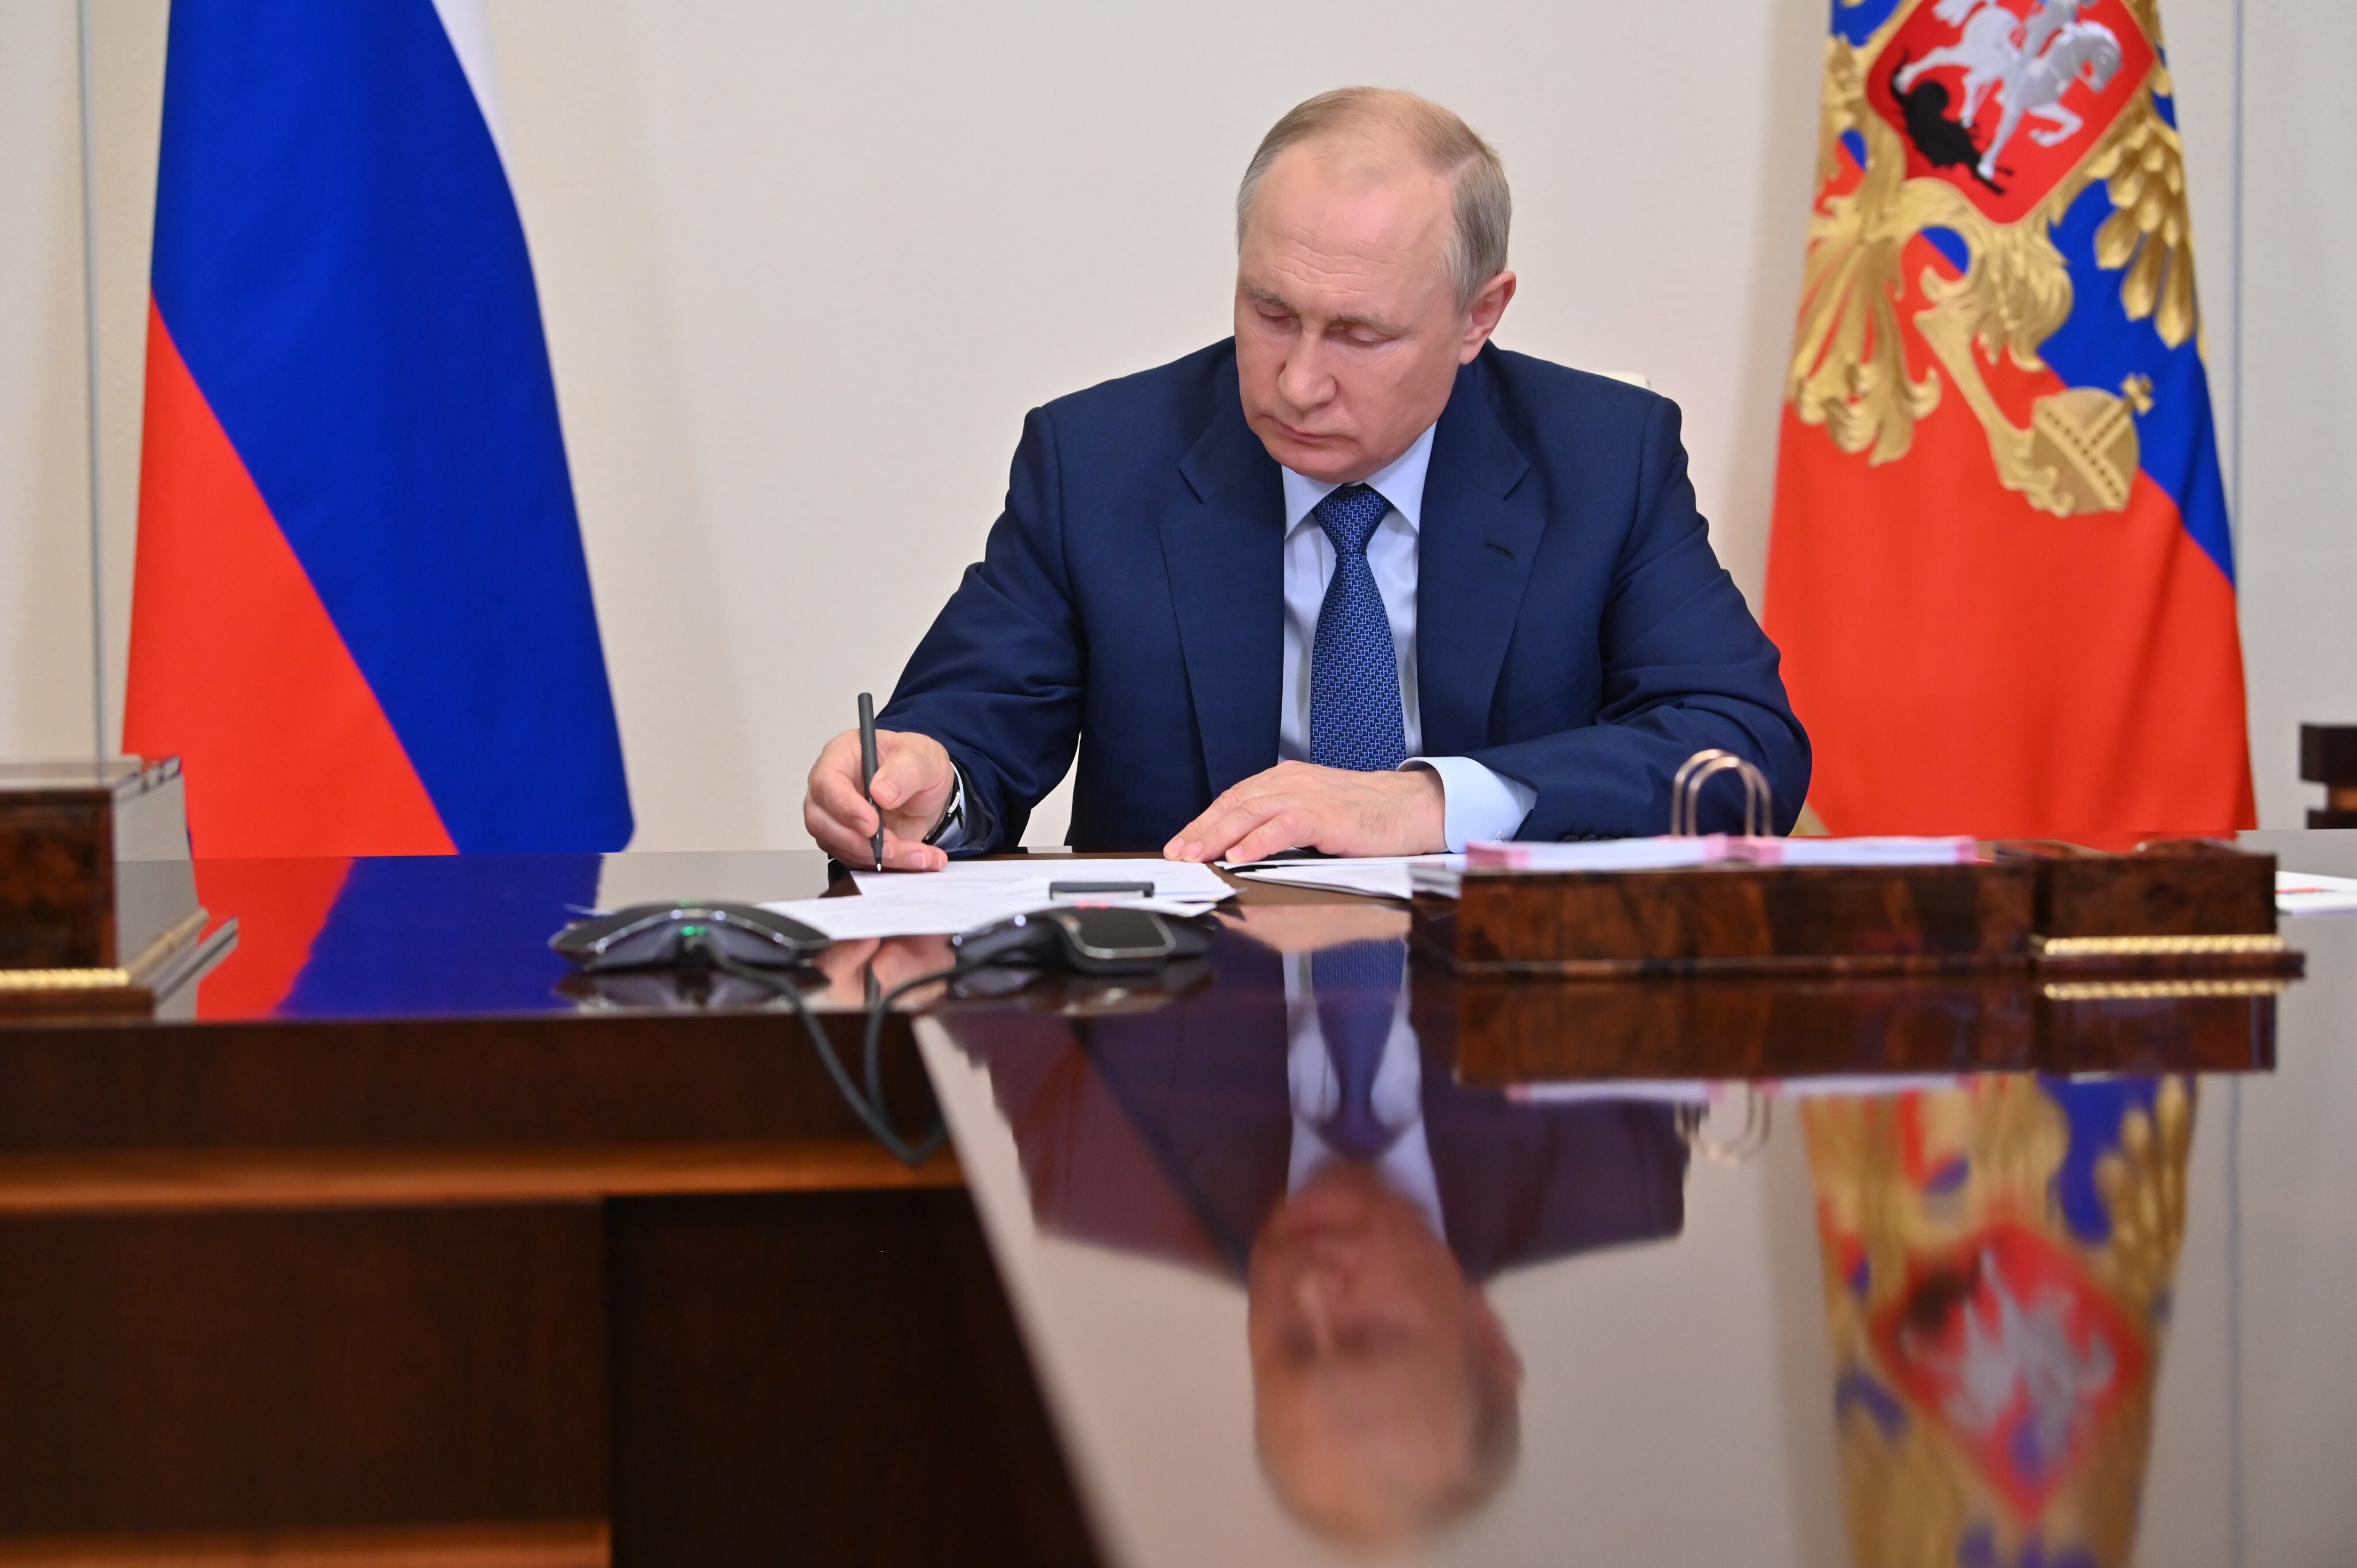 Евросоюз призвал Кремль отменить указ о гуманитарной поддержке Донбасса